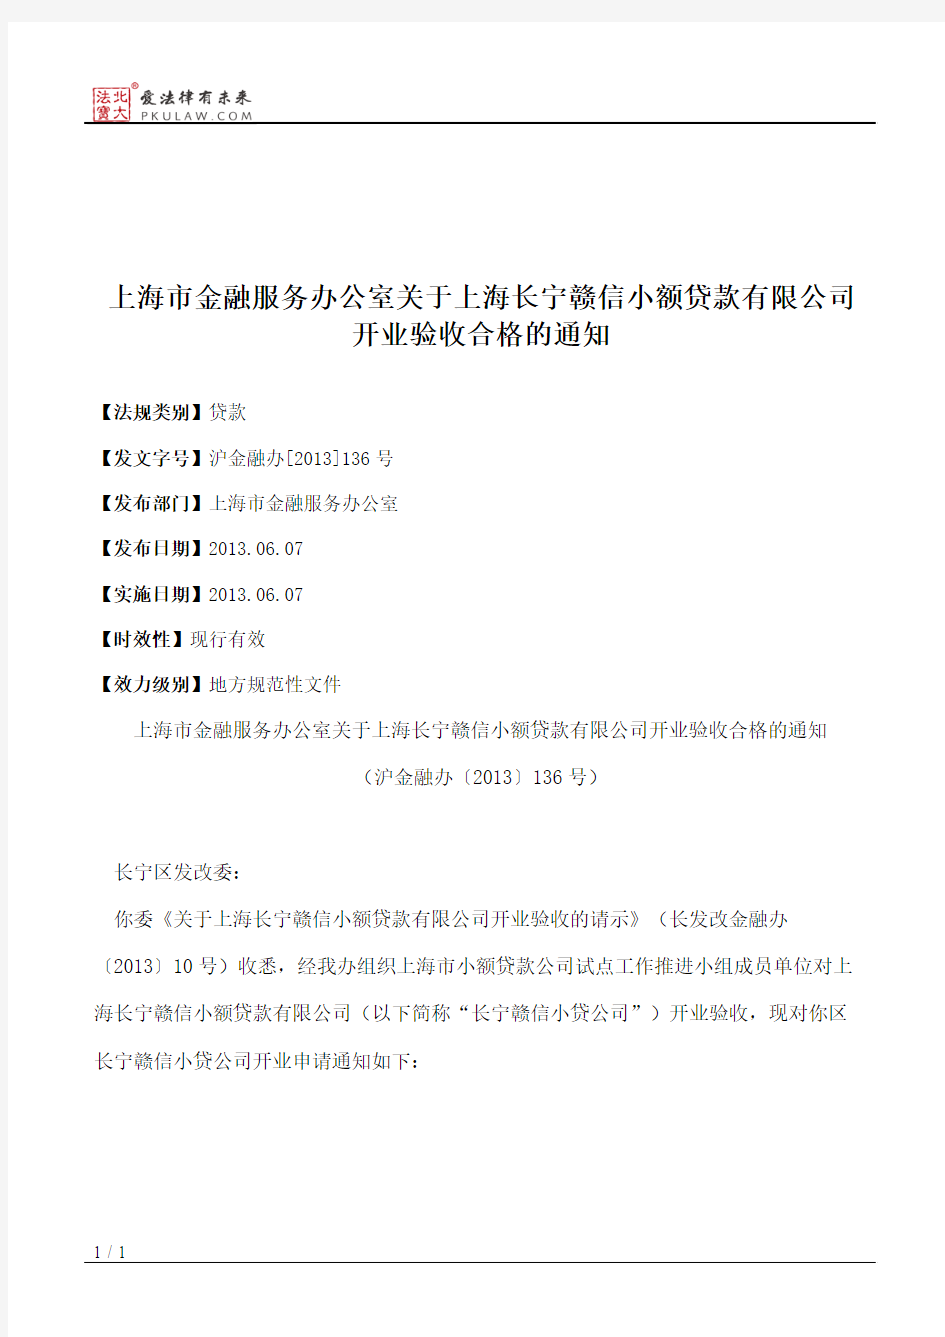 上海市金融服务办公室关于上海长宁赣信小额贷款有限公司开业验收